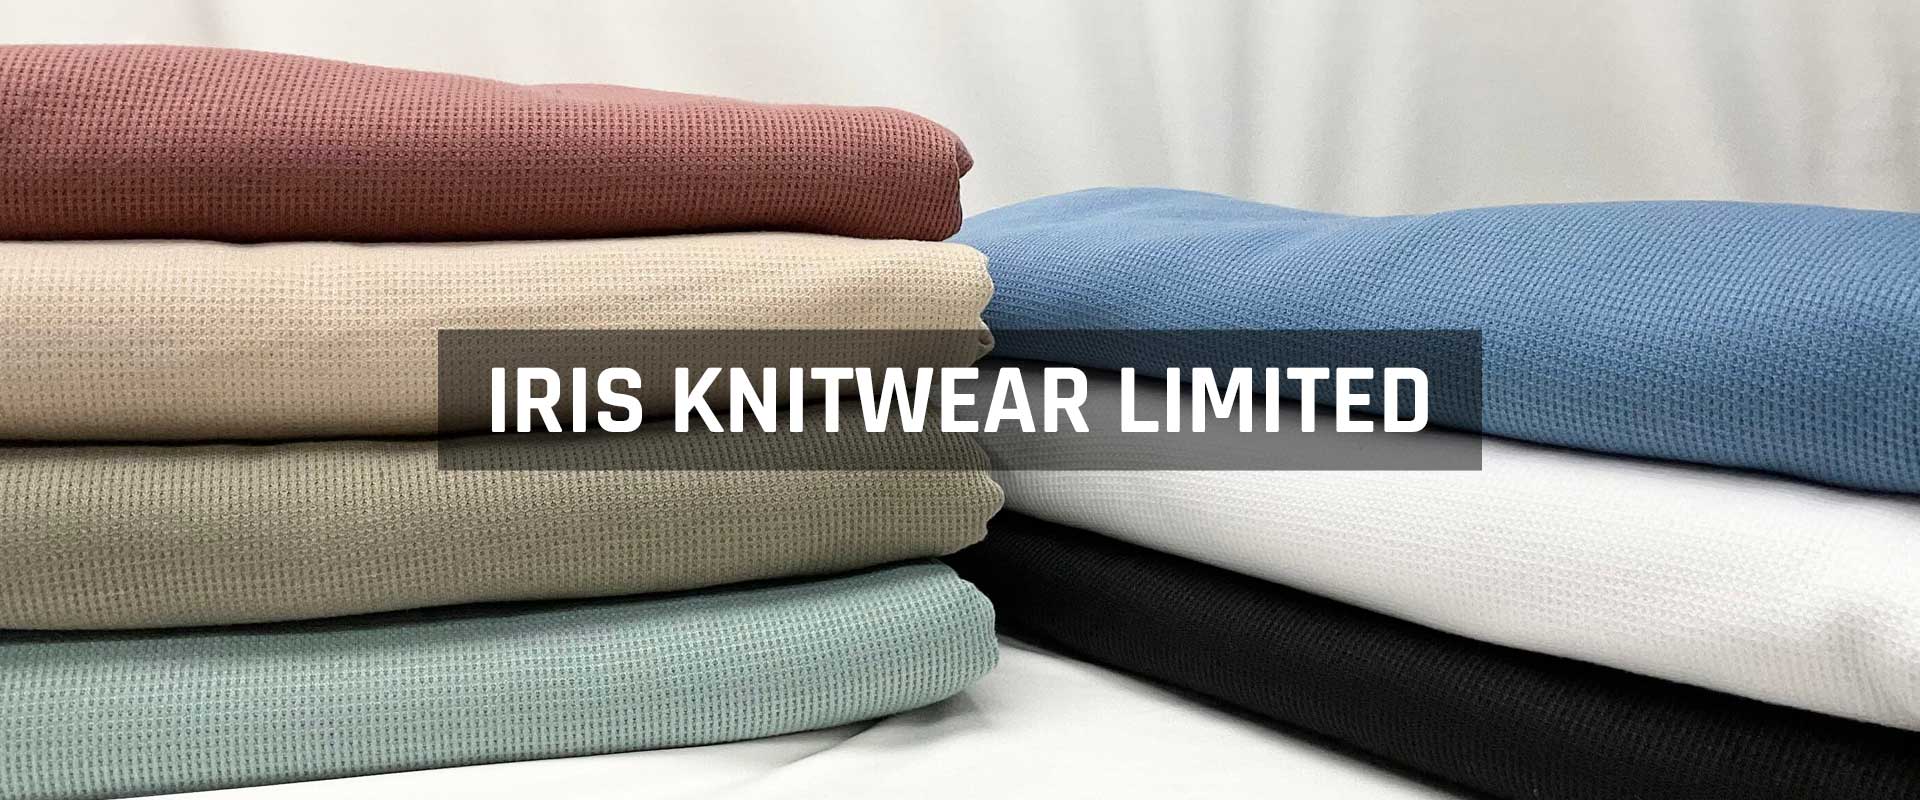 IRIS Knitwear Limited